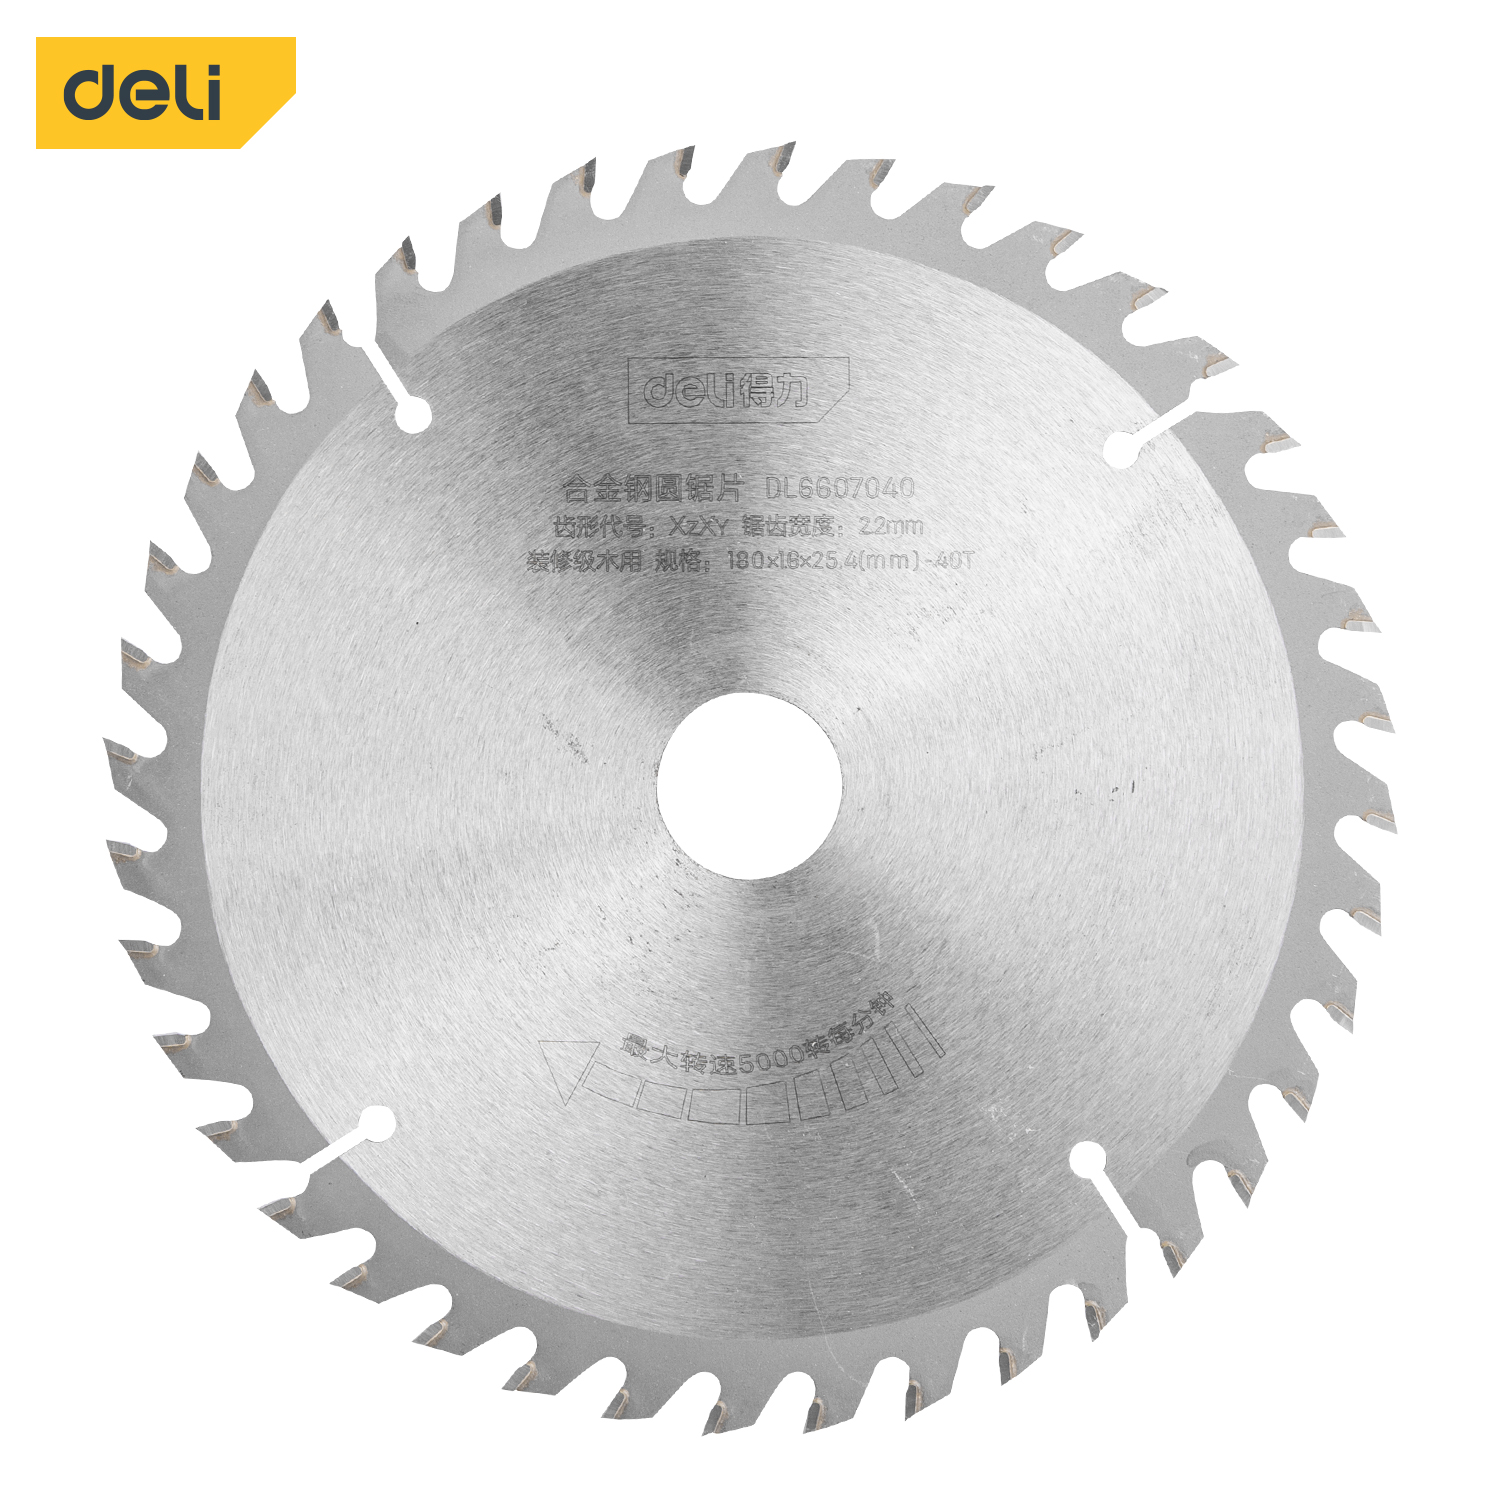 Deli-DL6607040 Alloy Steel Circular Saw Blade